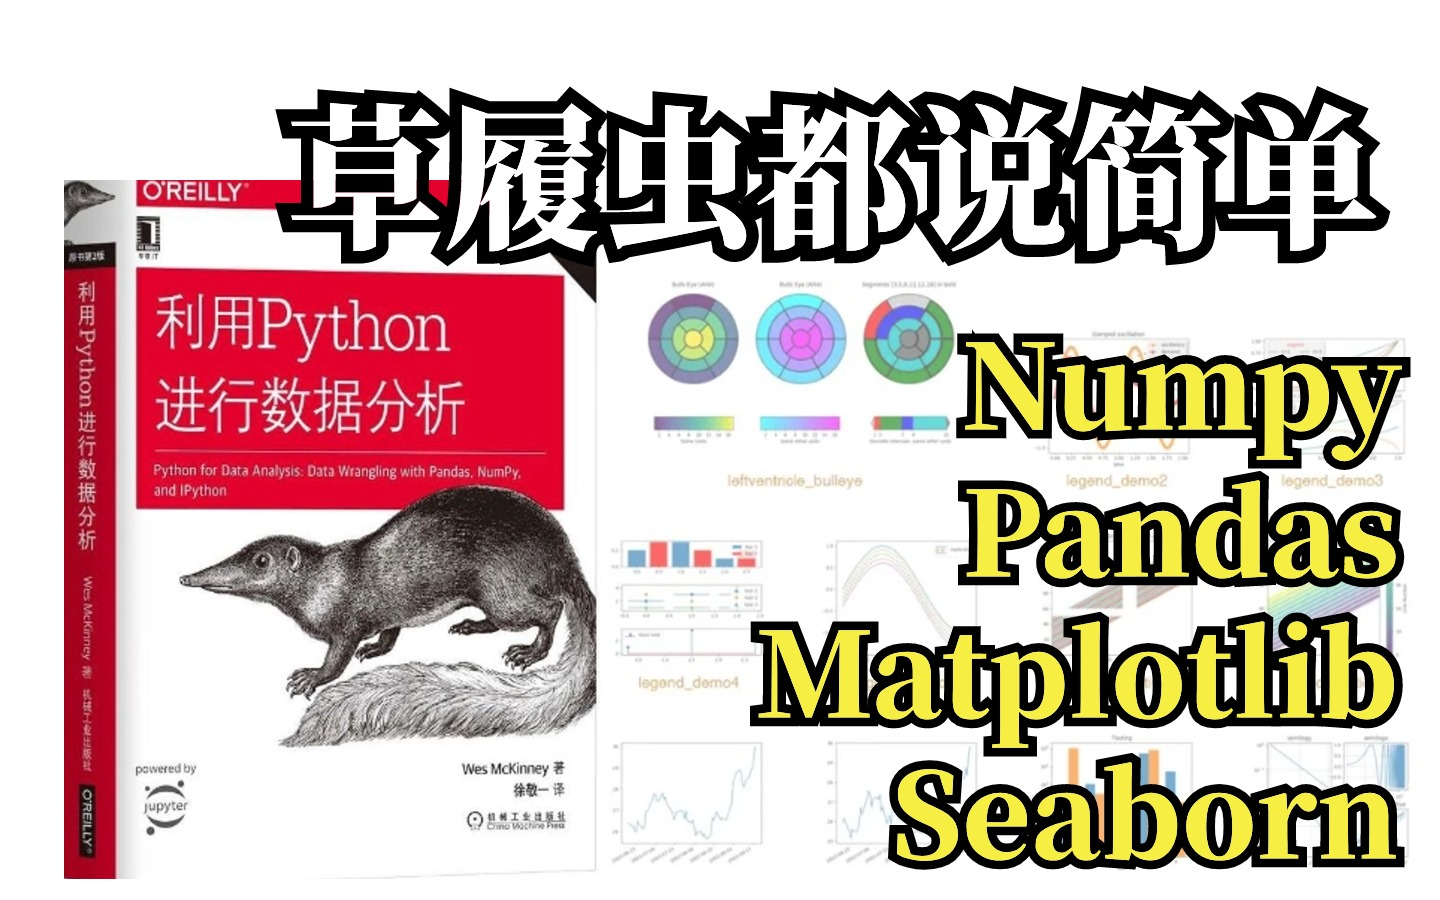 比啃书高效！圈内疯传的【人工智能python数据分析】教程，浙大教授带你一口气学完numpy/pandas/matplotlib/seaborn。草履虫能懂！！